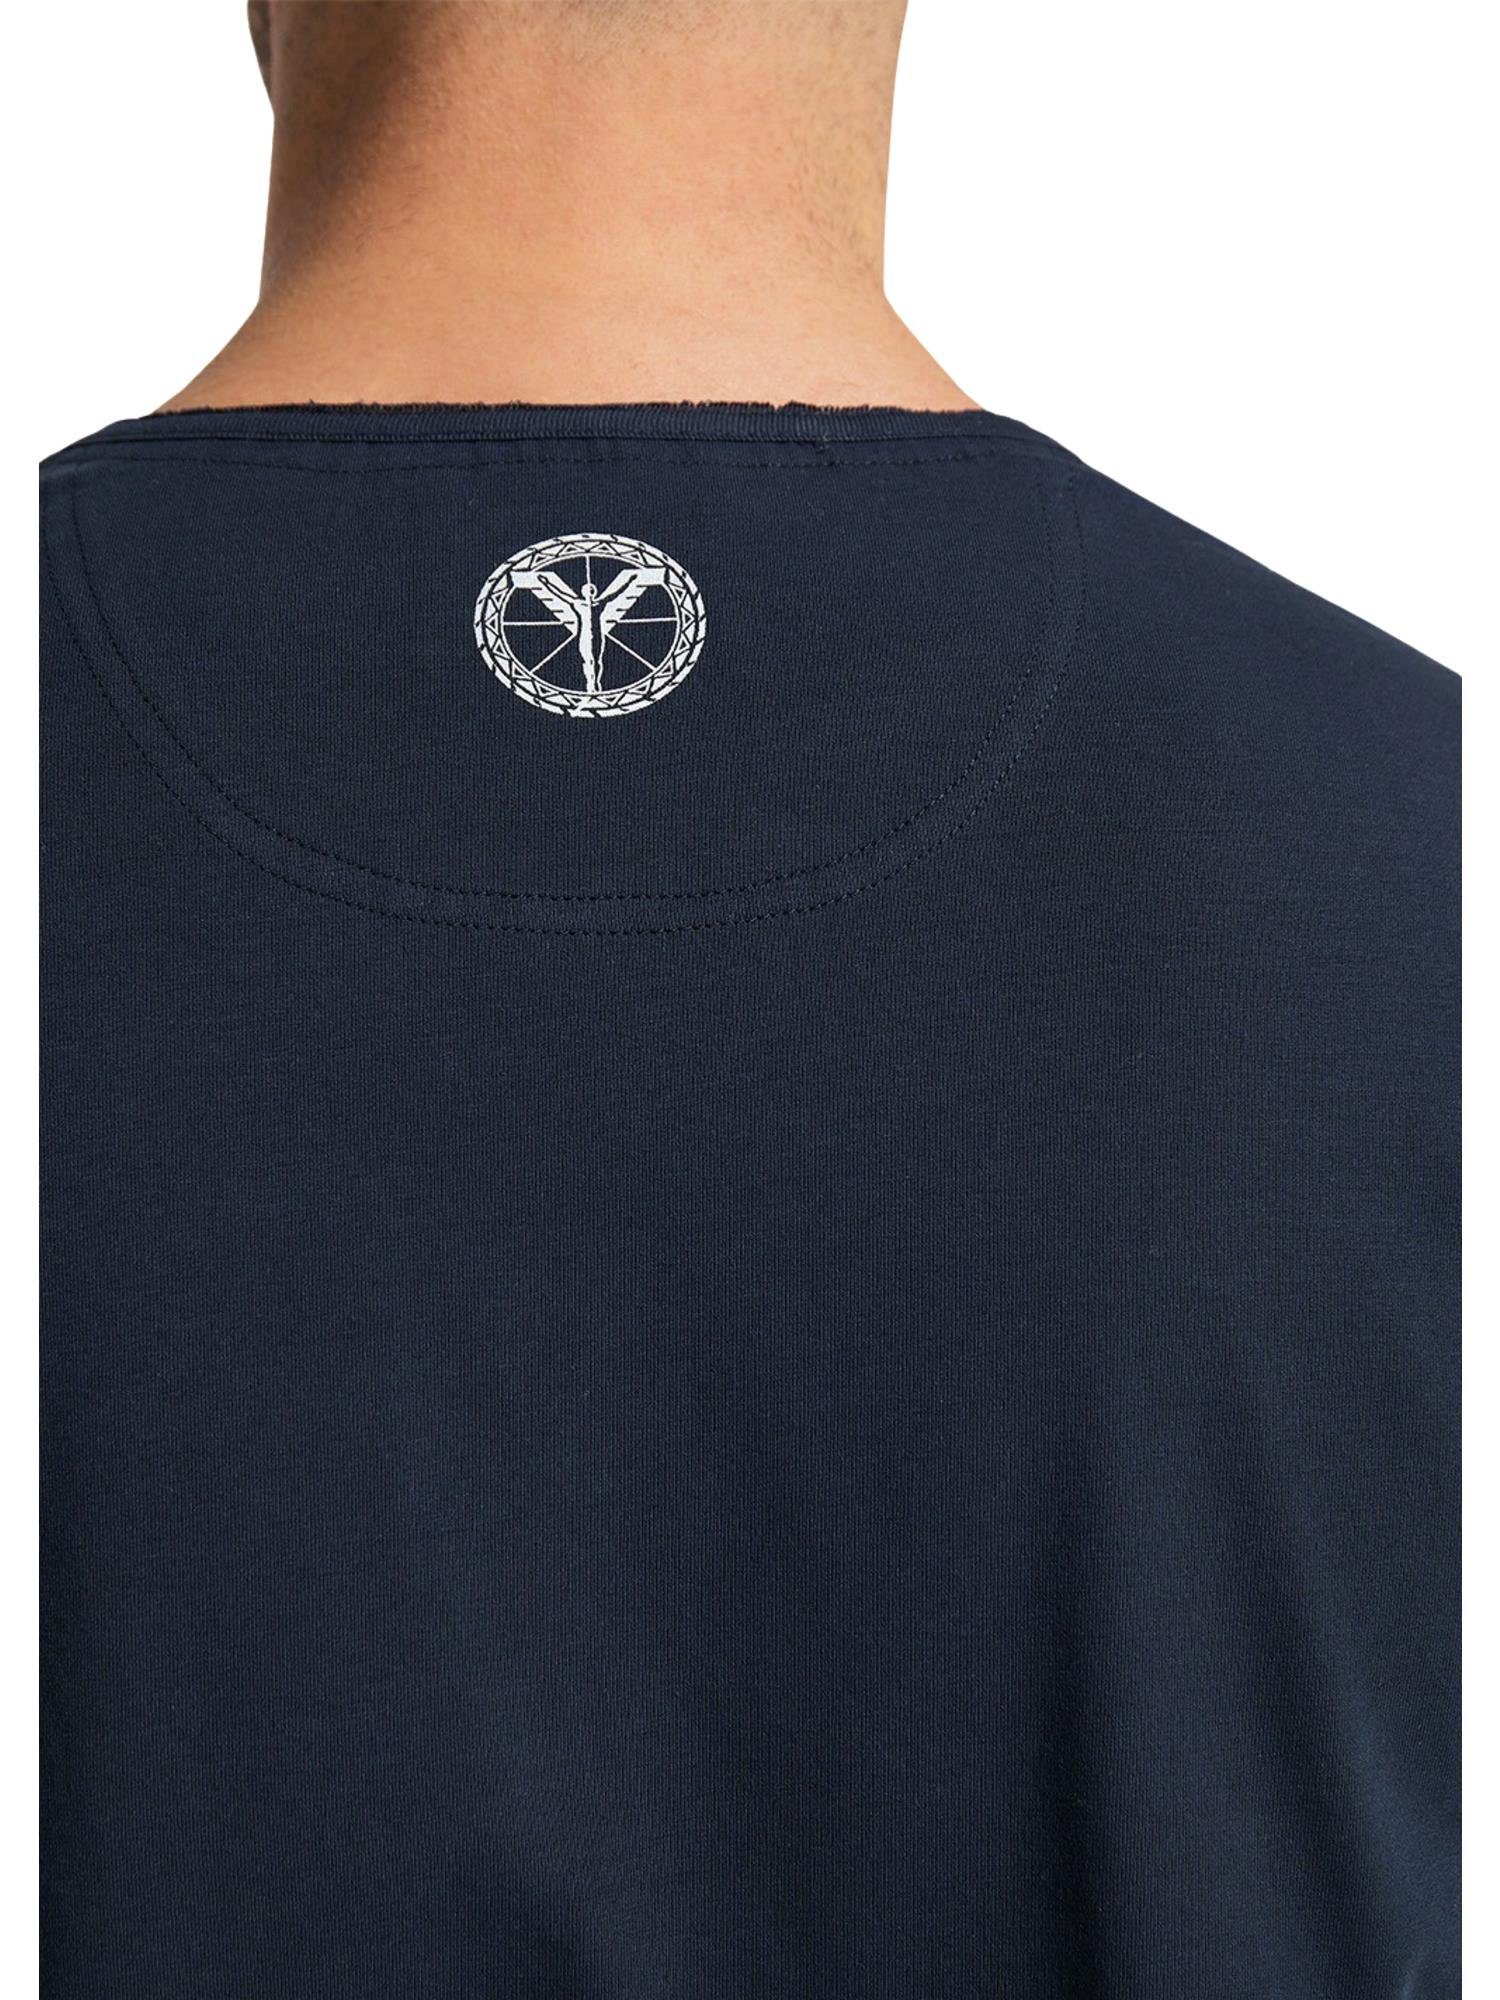 CARLO COLUCCI T-Shirt Collatuzzo Navy